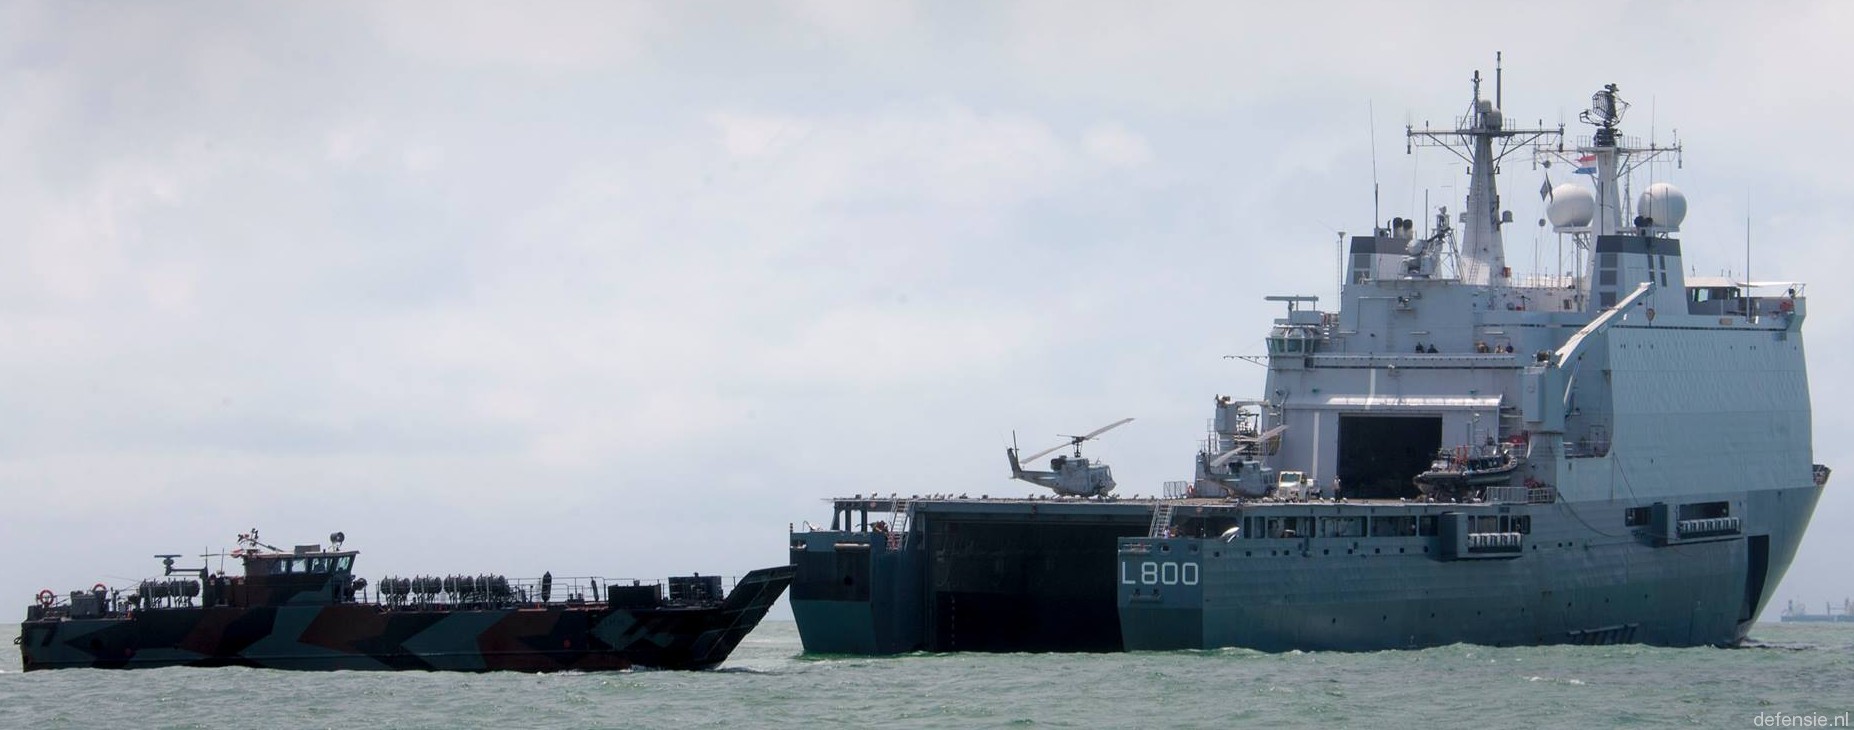 l-800 hnlms rotterdam amphibious landing ship dock lpd royal netherlands navy 18 landing craft well deck